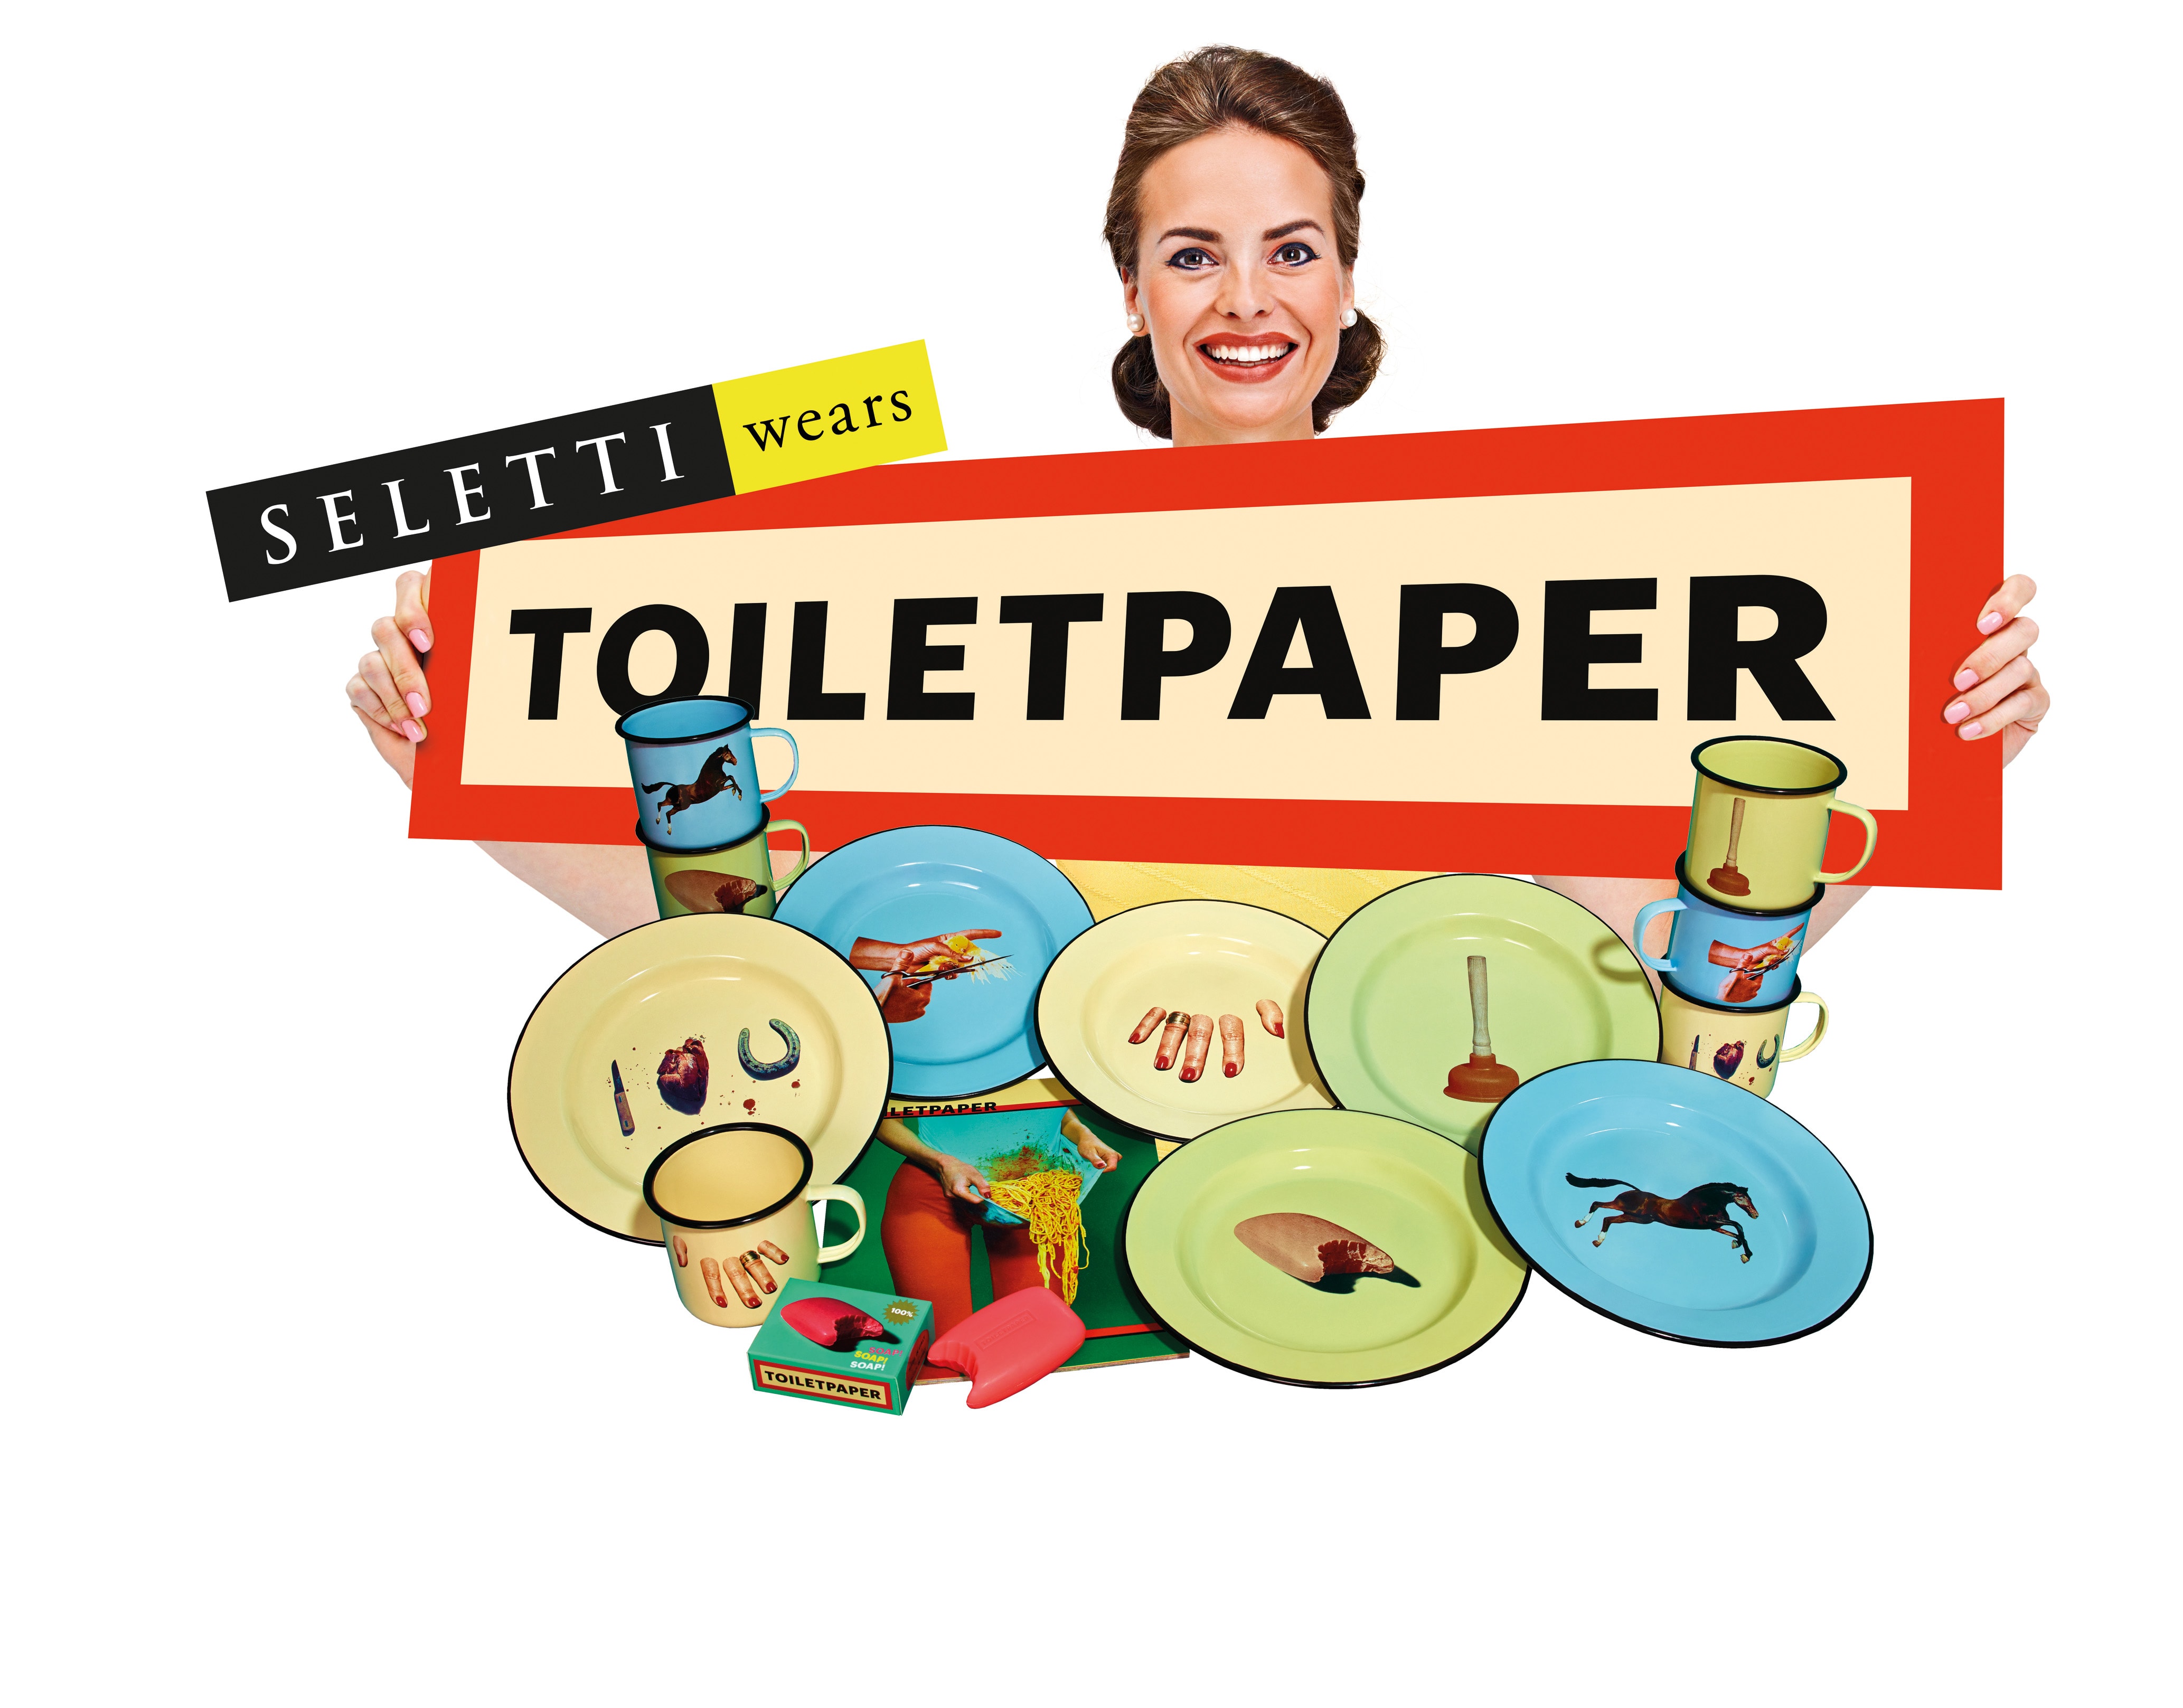 seletti wears toiletpaper